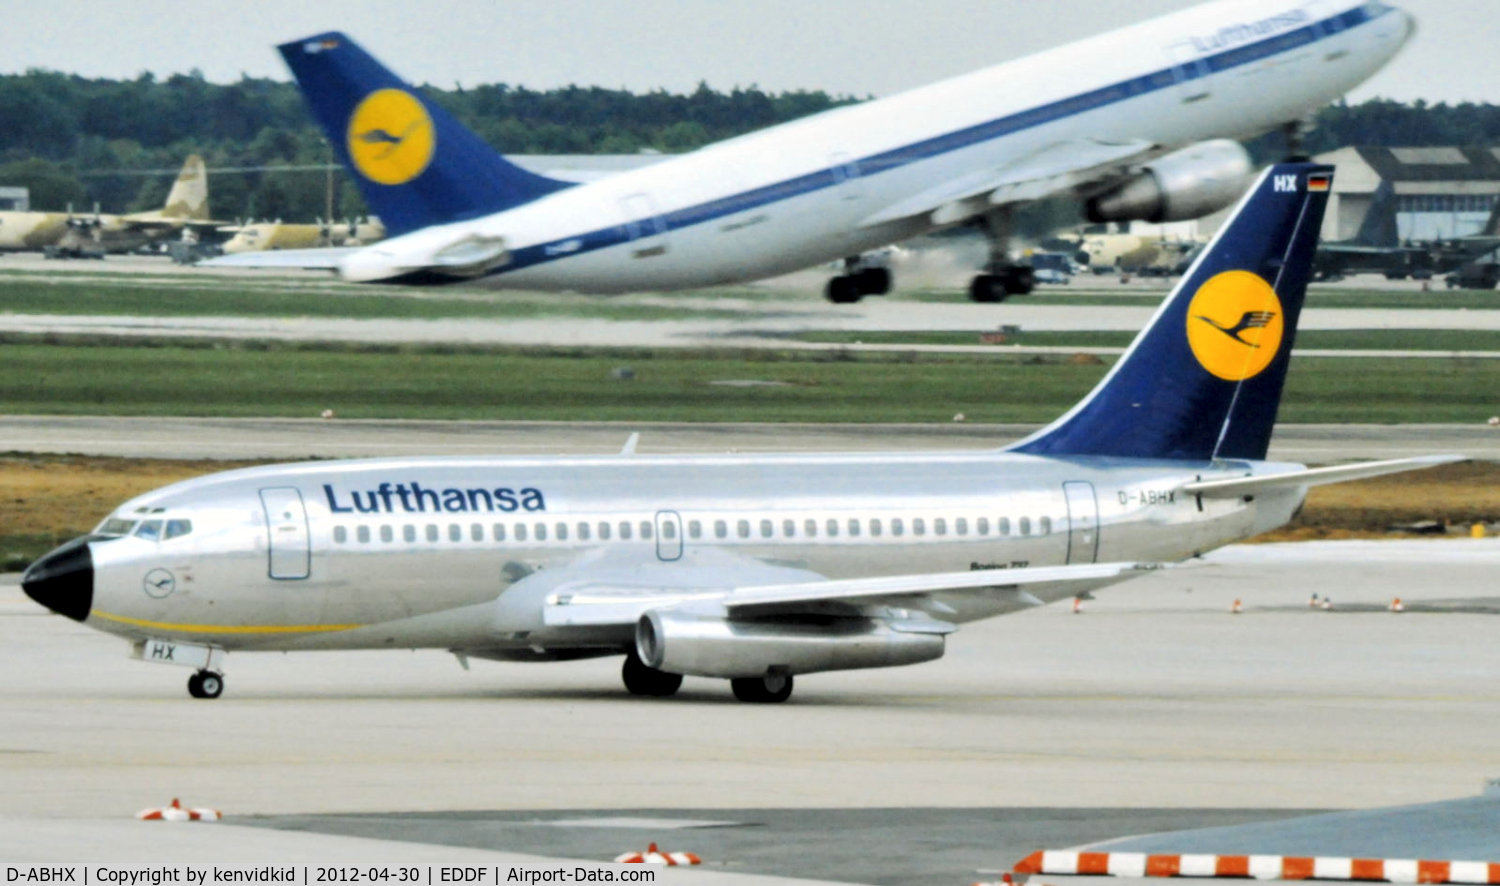 D-ABHX, 1982 Boeing 737-230 C/N 22637, Lufthansa